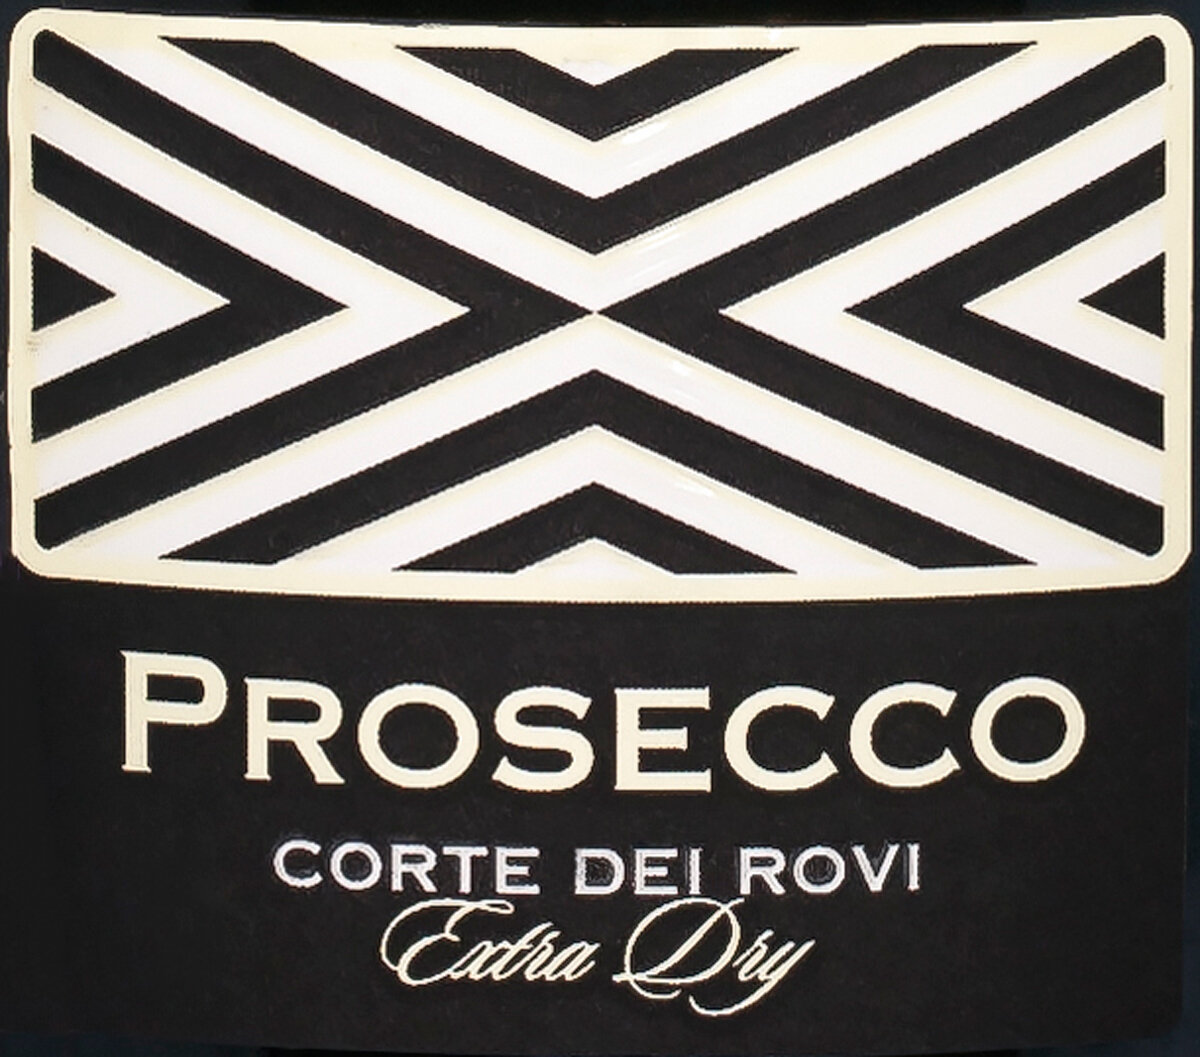 Prosecco doc dei rovi цена. Вино Corte dei Rovi Prosecco. Корте дей рови Просекко doc. Вино игристое корте дей рови. Вино игристое корте дей рови Просекко док.